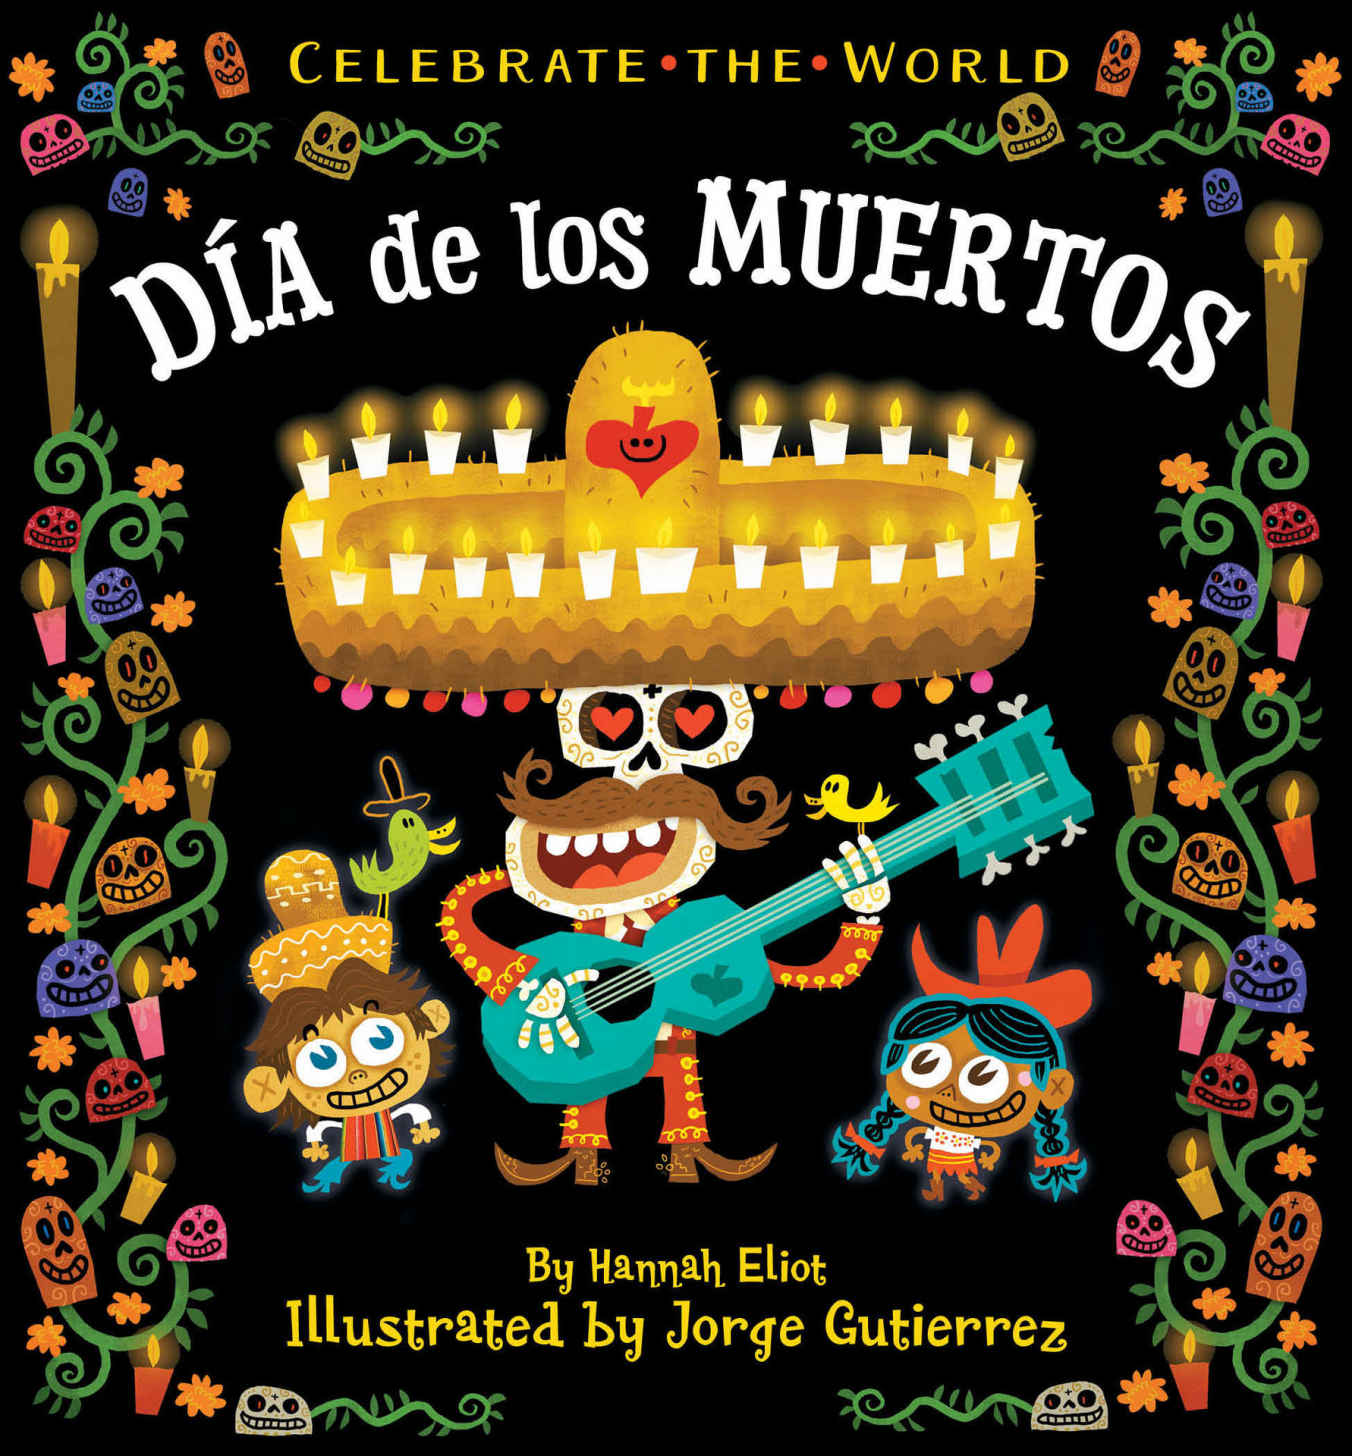 Dia de los Muertos, board book is read-along fun for 3 and up